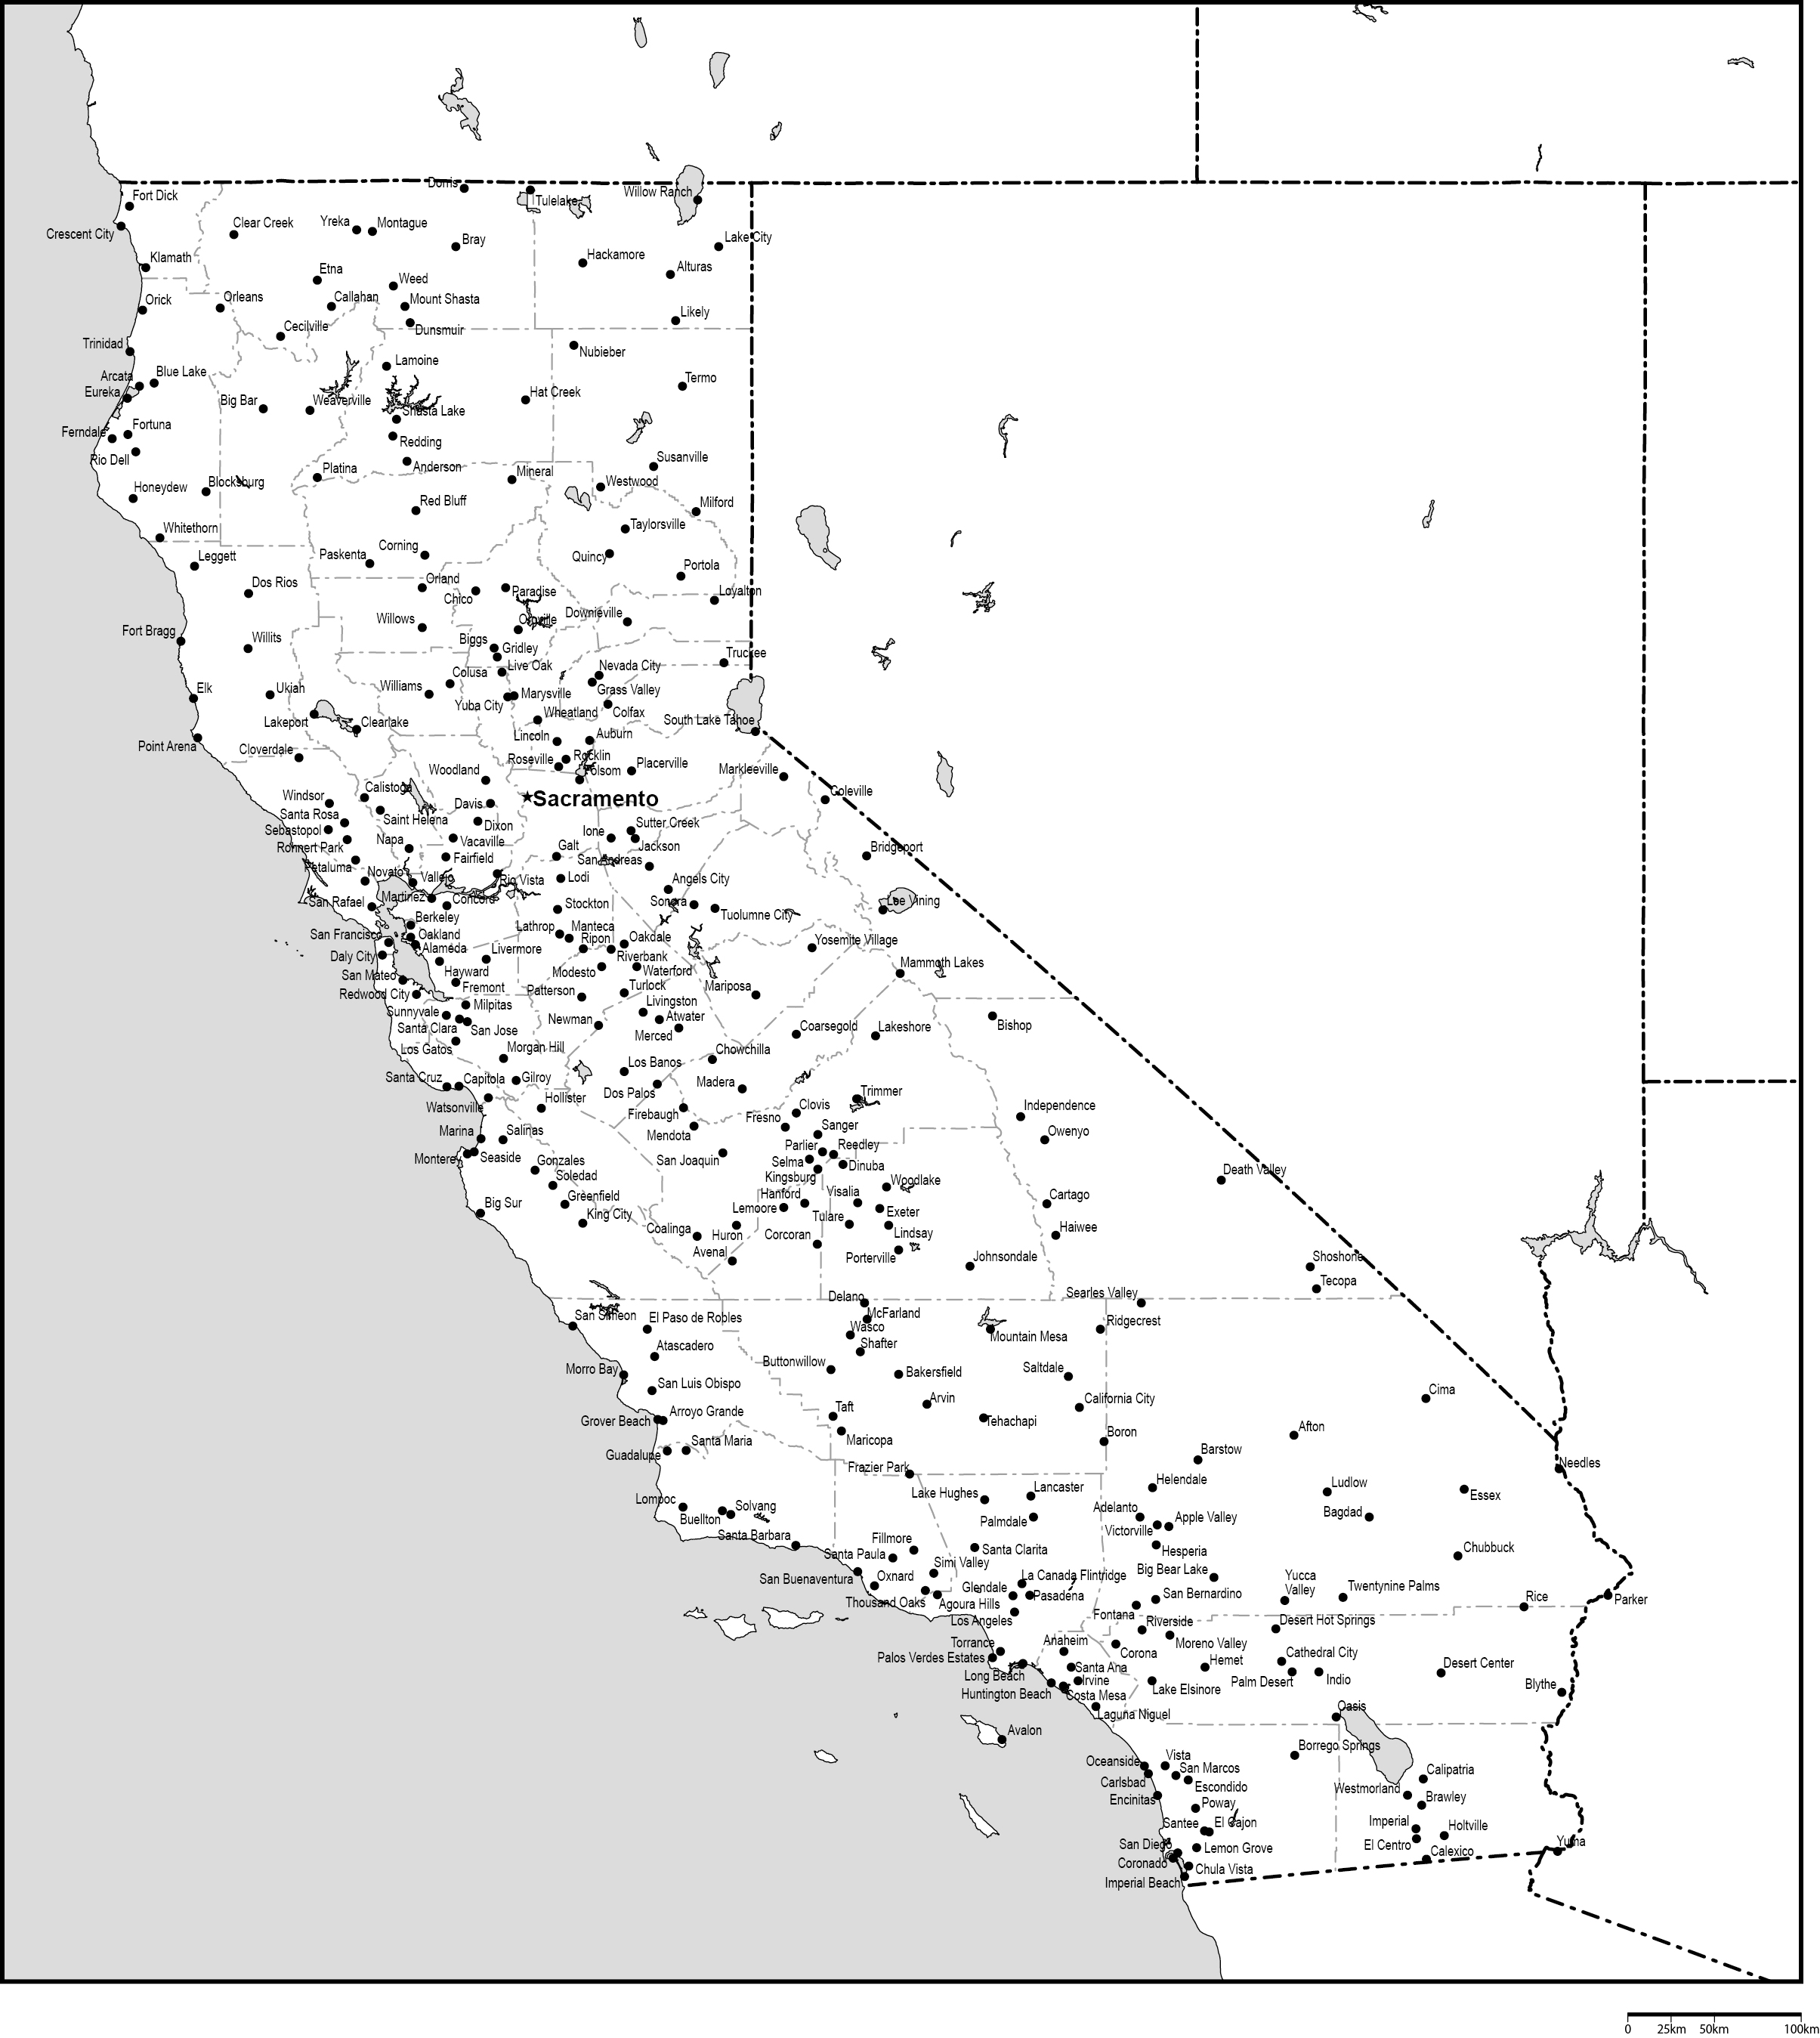 カリフォルニア州郡分け白地図州都・主な都市あり(英語)フリーデータの画像